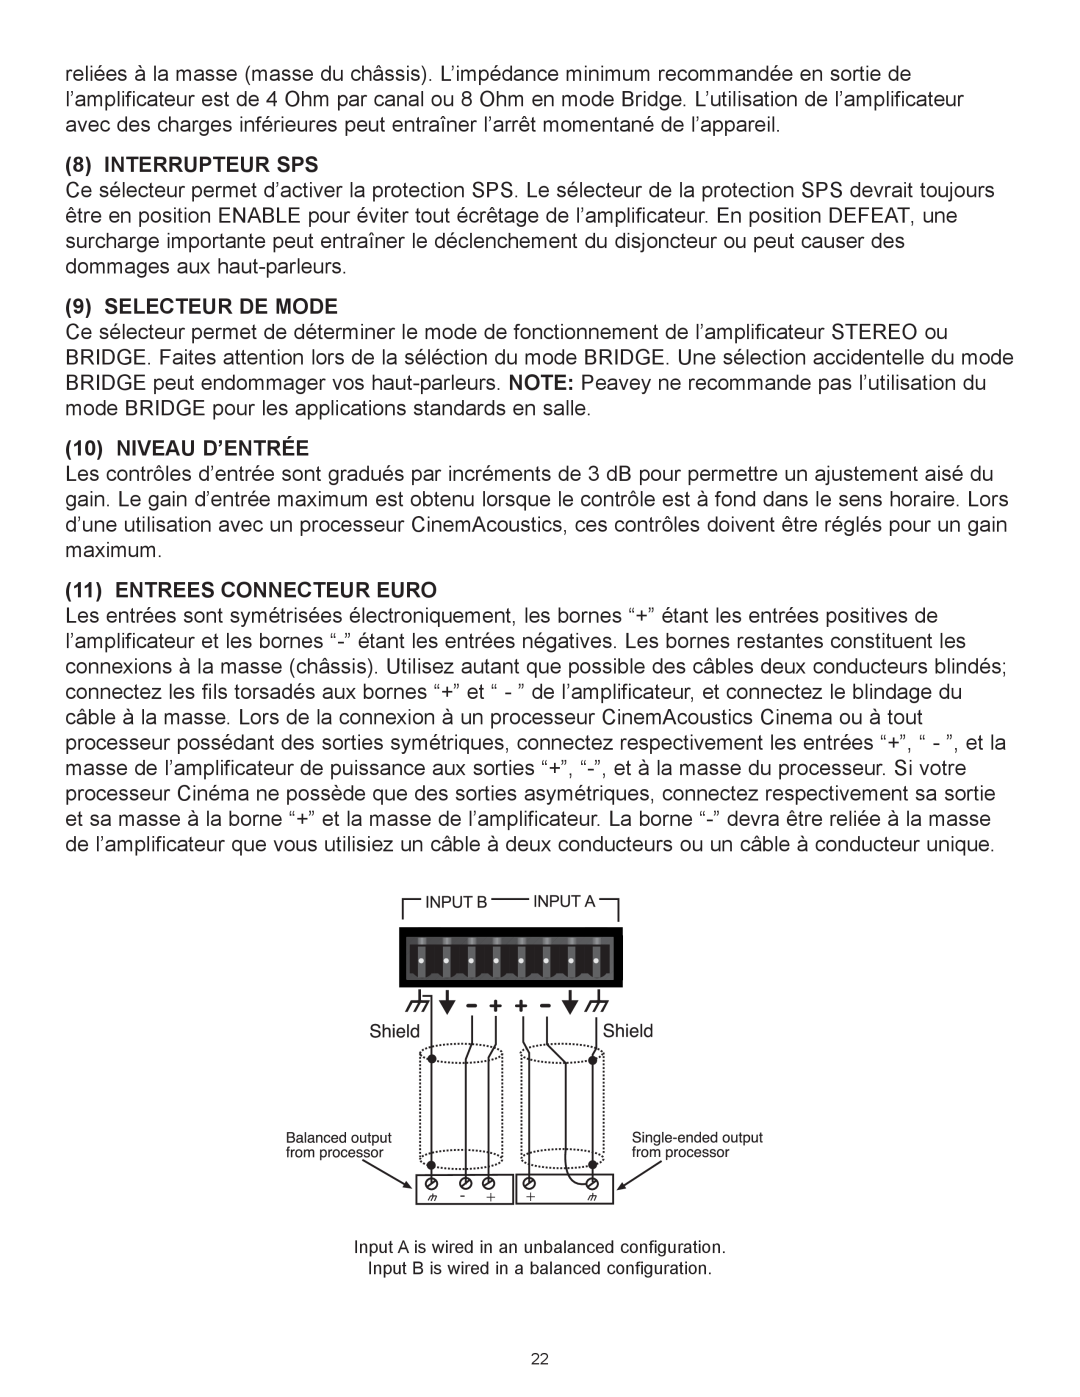 Peavey CA-A800B, CA-A540B manual Interrupteur Sps, Selecteur De Mode, NIVEAU DÕENTRƒE, Entrees Connecteur Euro 